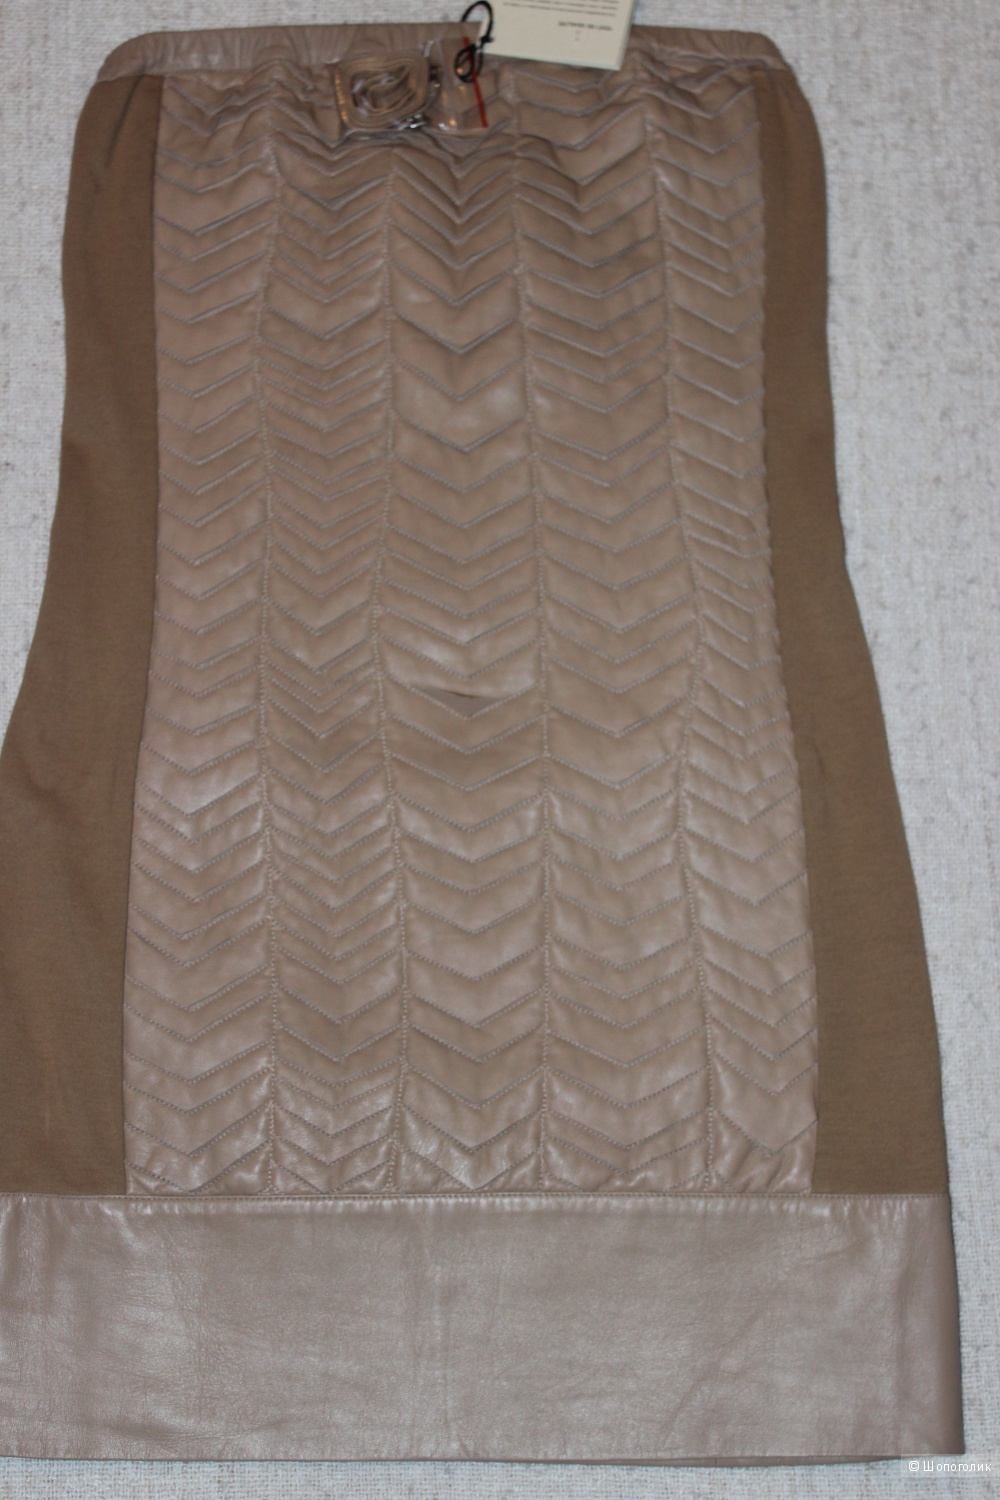 Платье из натуральной кожи, цвет нюд, PATRIZIA PEPE, сделано в Италии.  Размер производителя 44.( На 46 RUS).